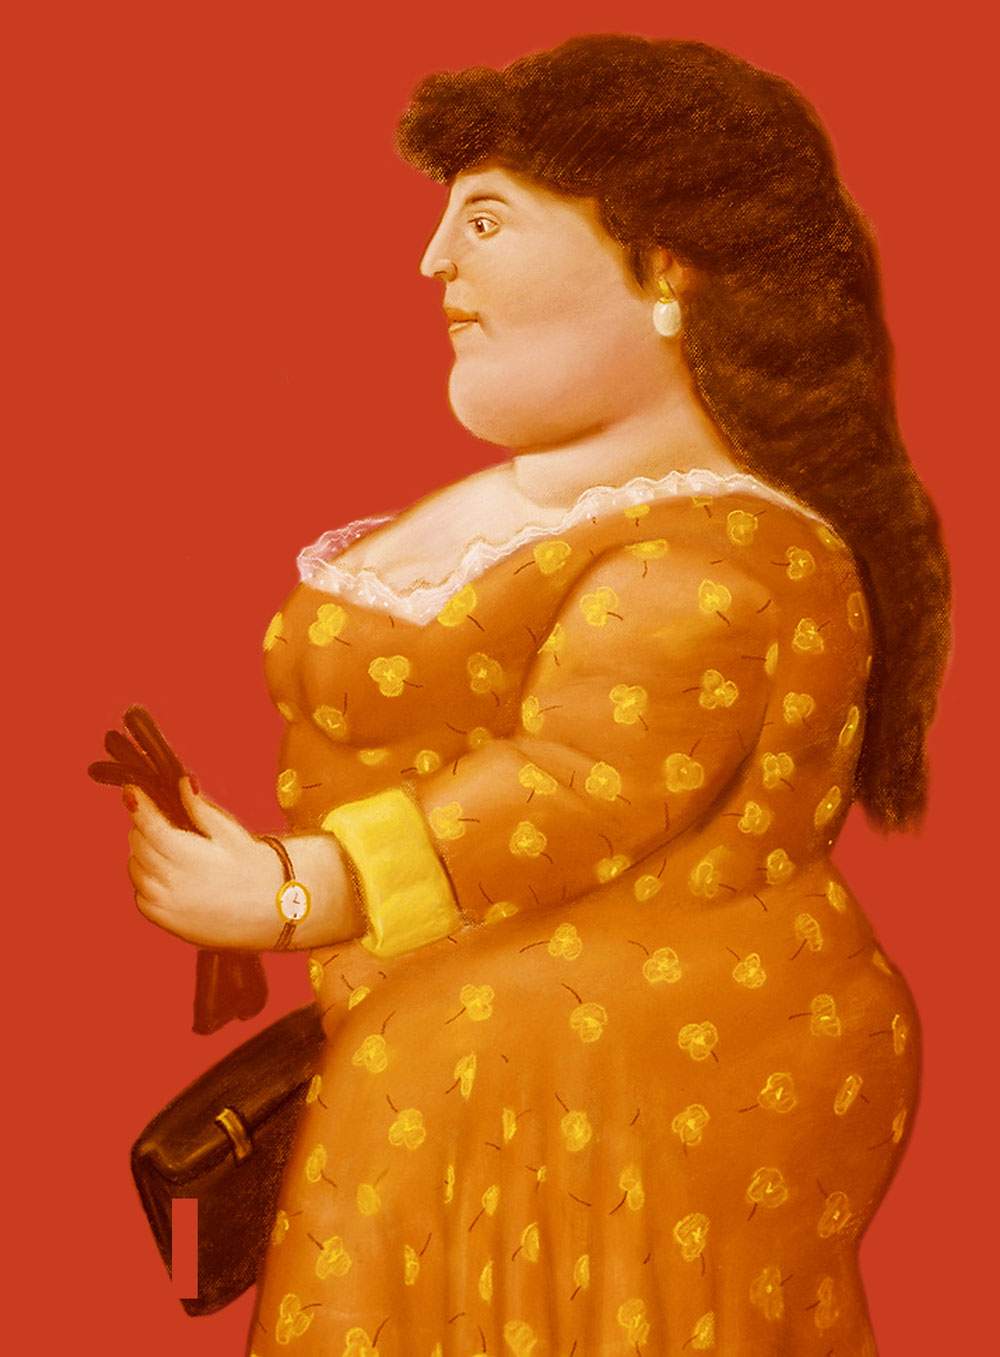 Une exposition consacrée à Botero à Bologne